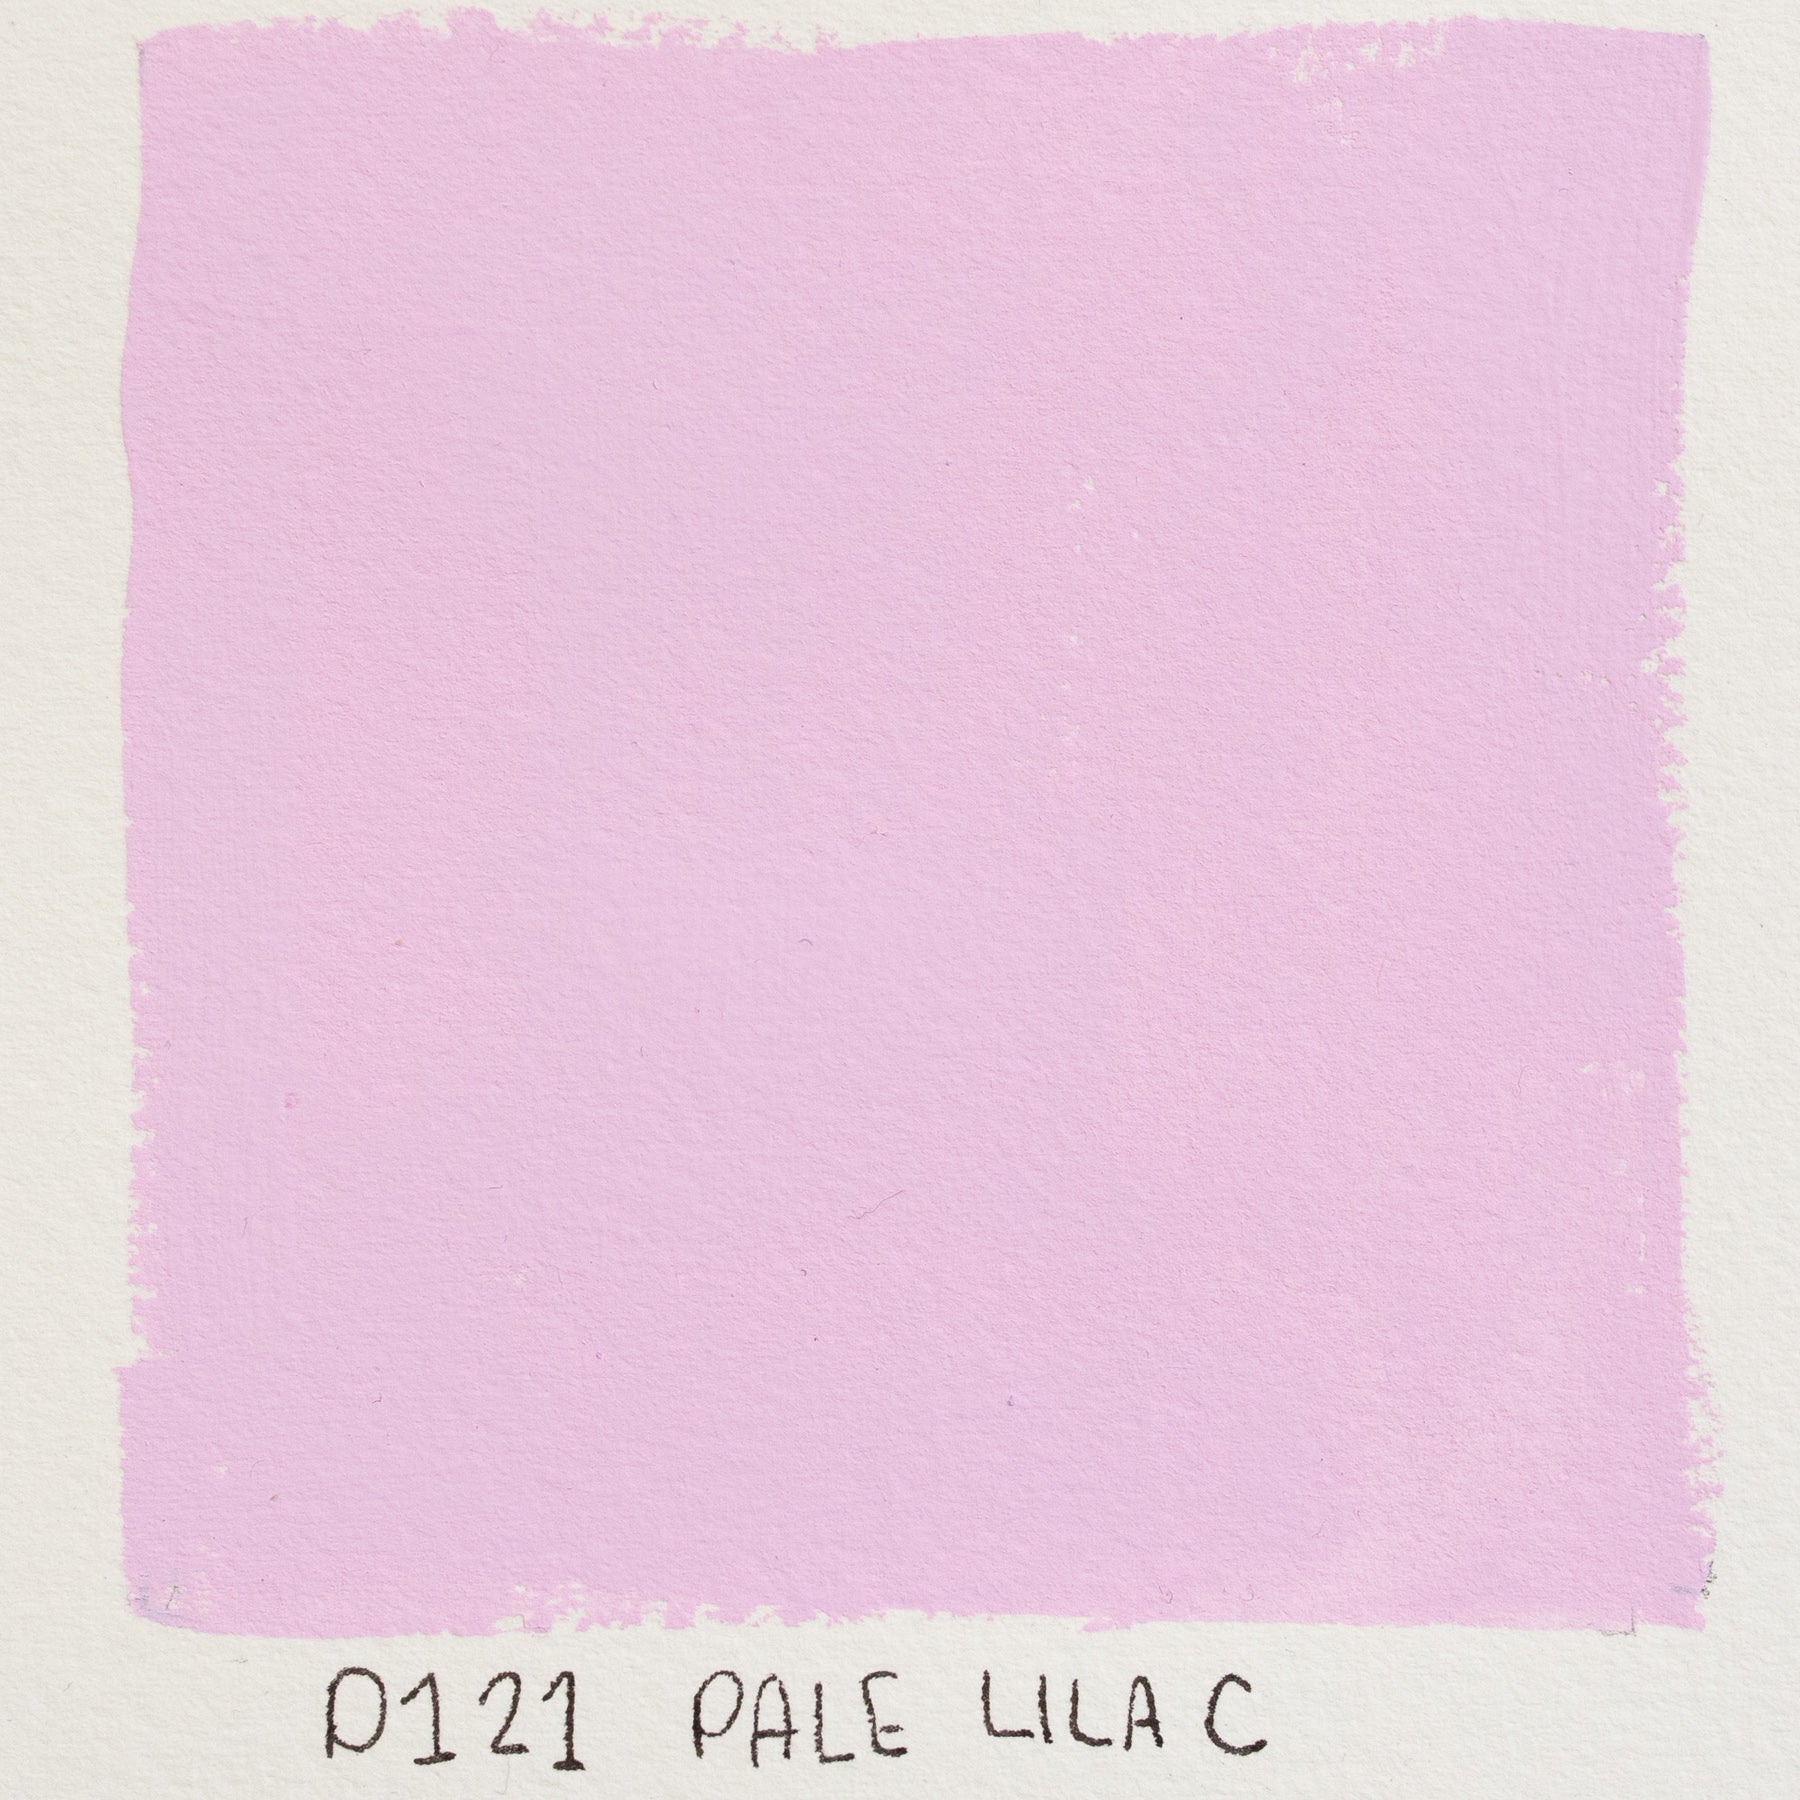 Holbein Acryla Gouache D121 A 'Pale Lilac'